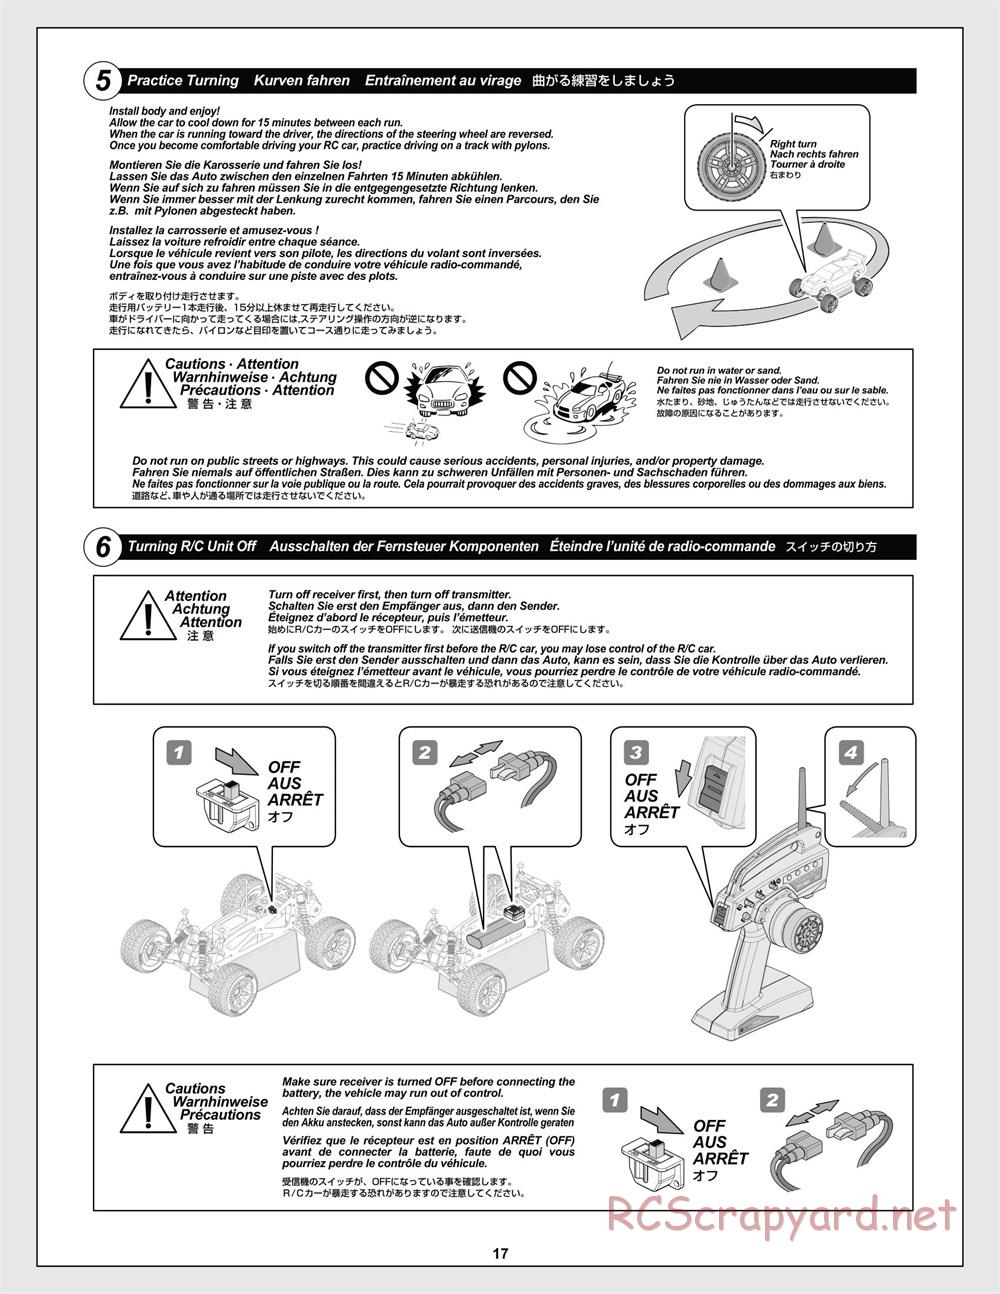 HPI - Jumpshot MT V2 - Manual - Page 17